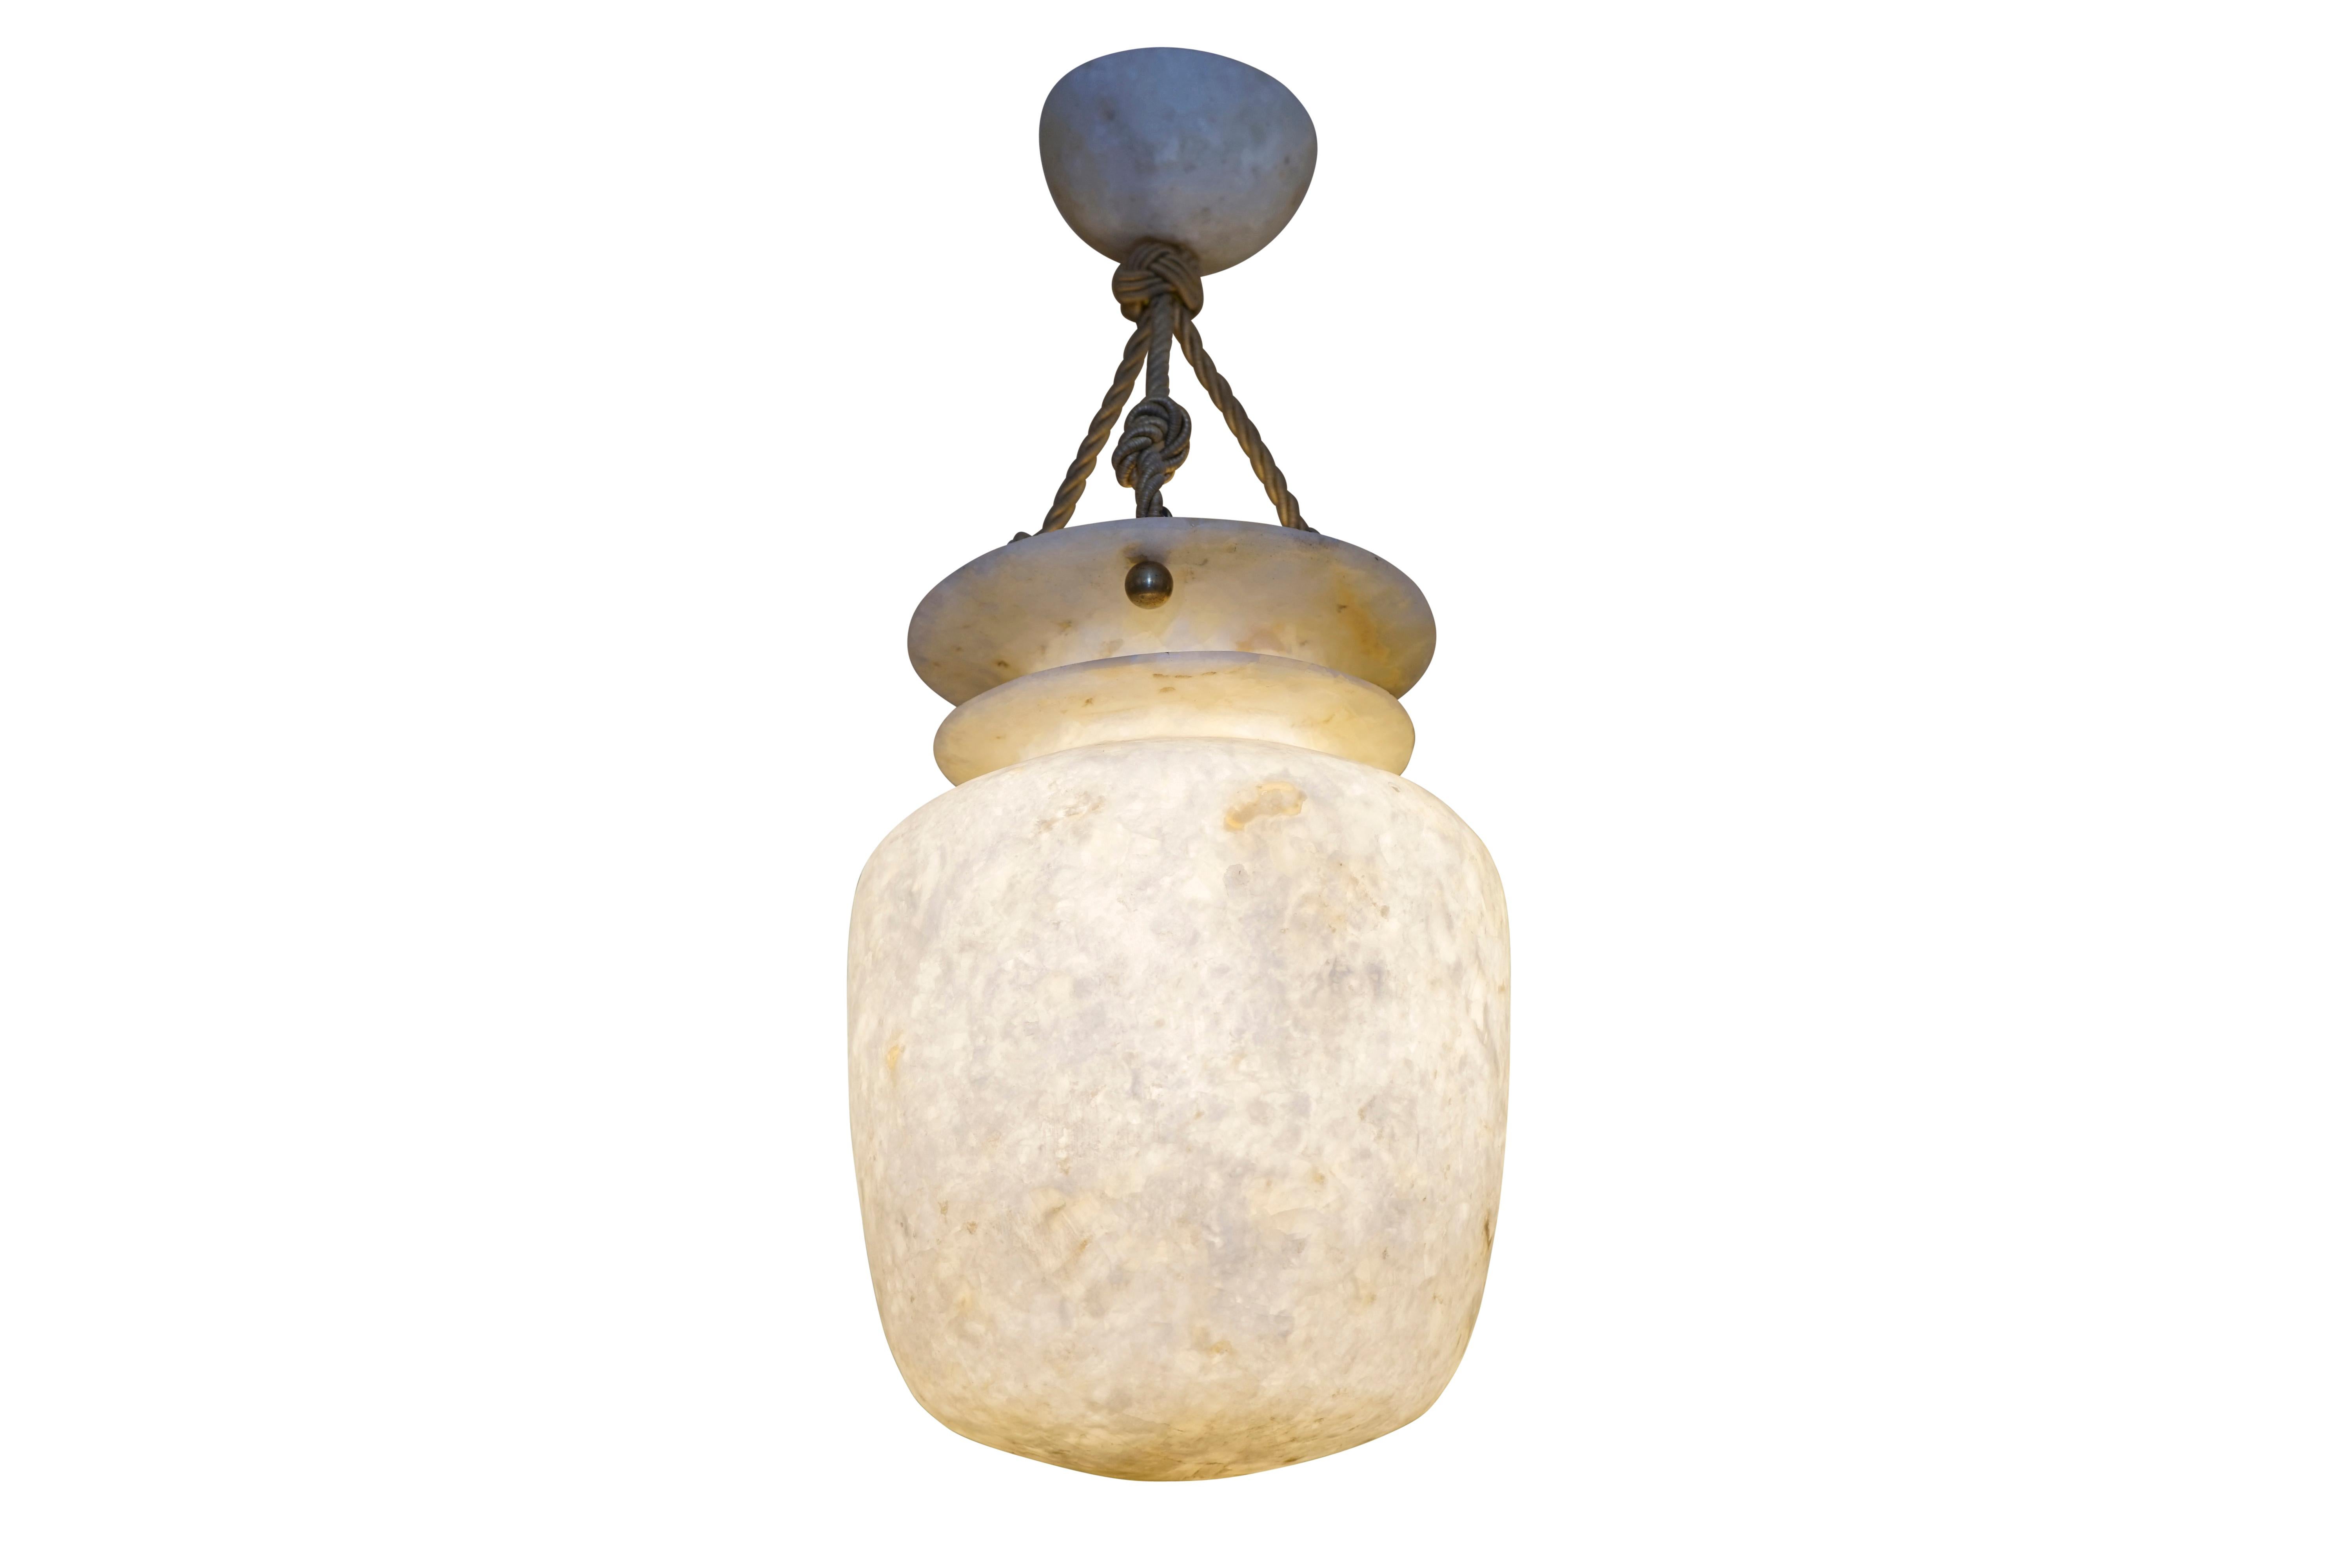 Jugendstil Alabaster Amphora Pendant Light Fixture